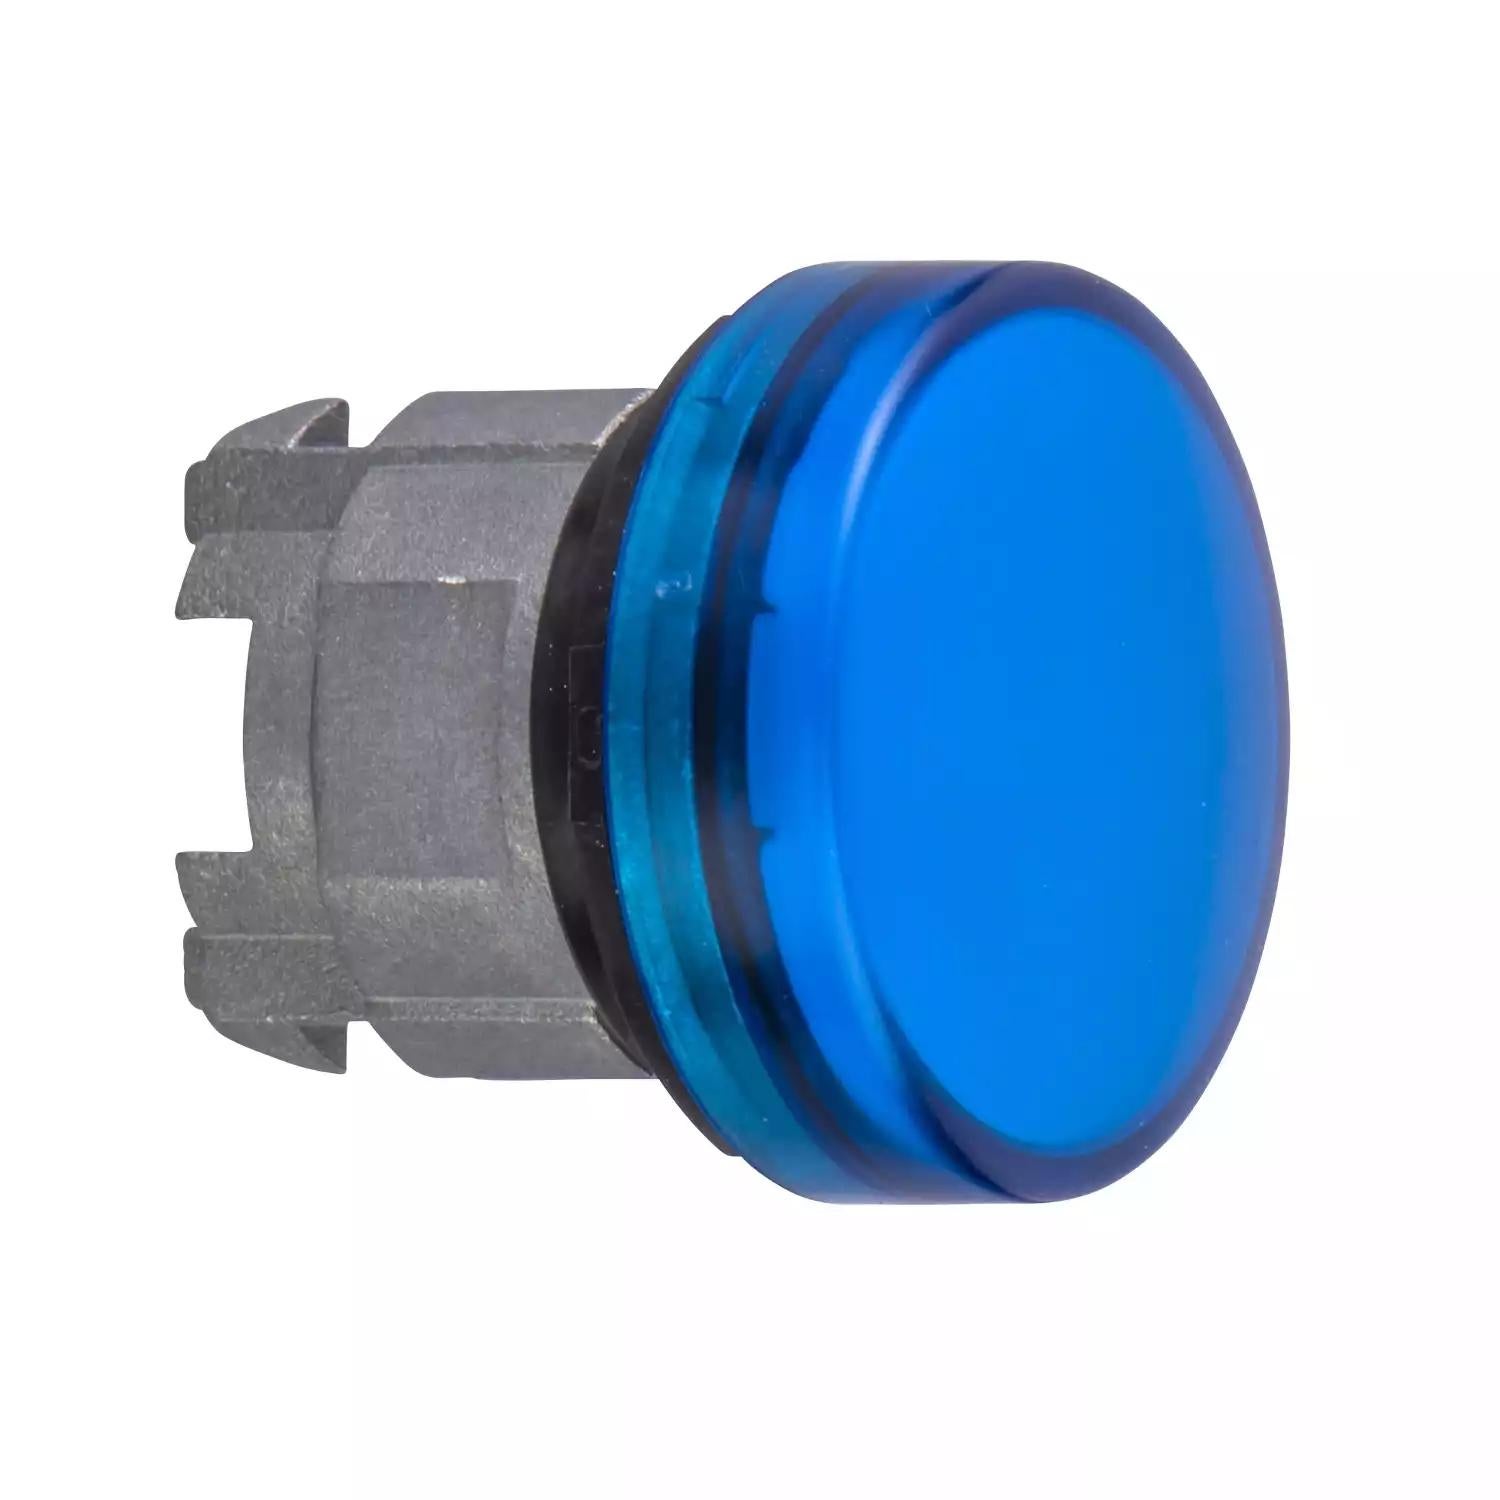 Harmony XB4, Pilot light head, metal, blue, Ø22, plain lens for integral LED